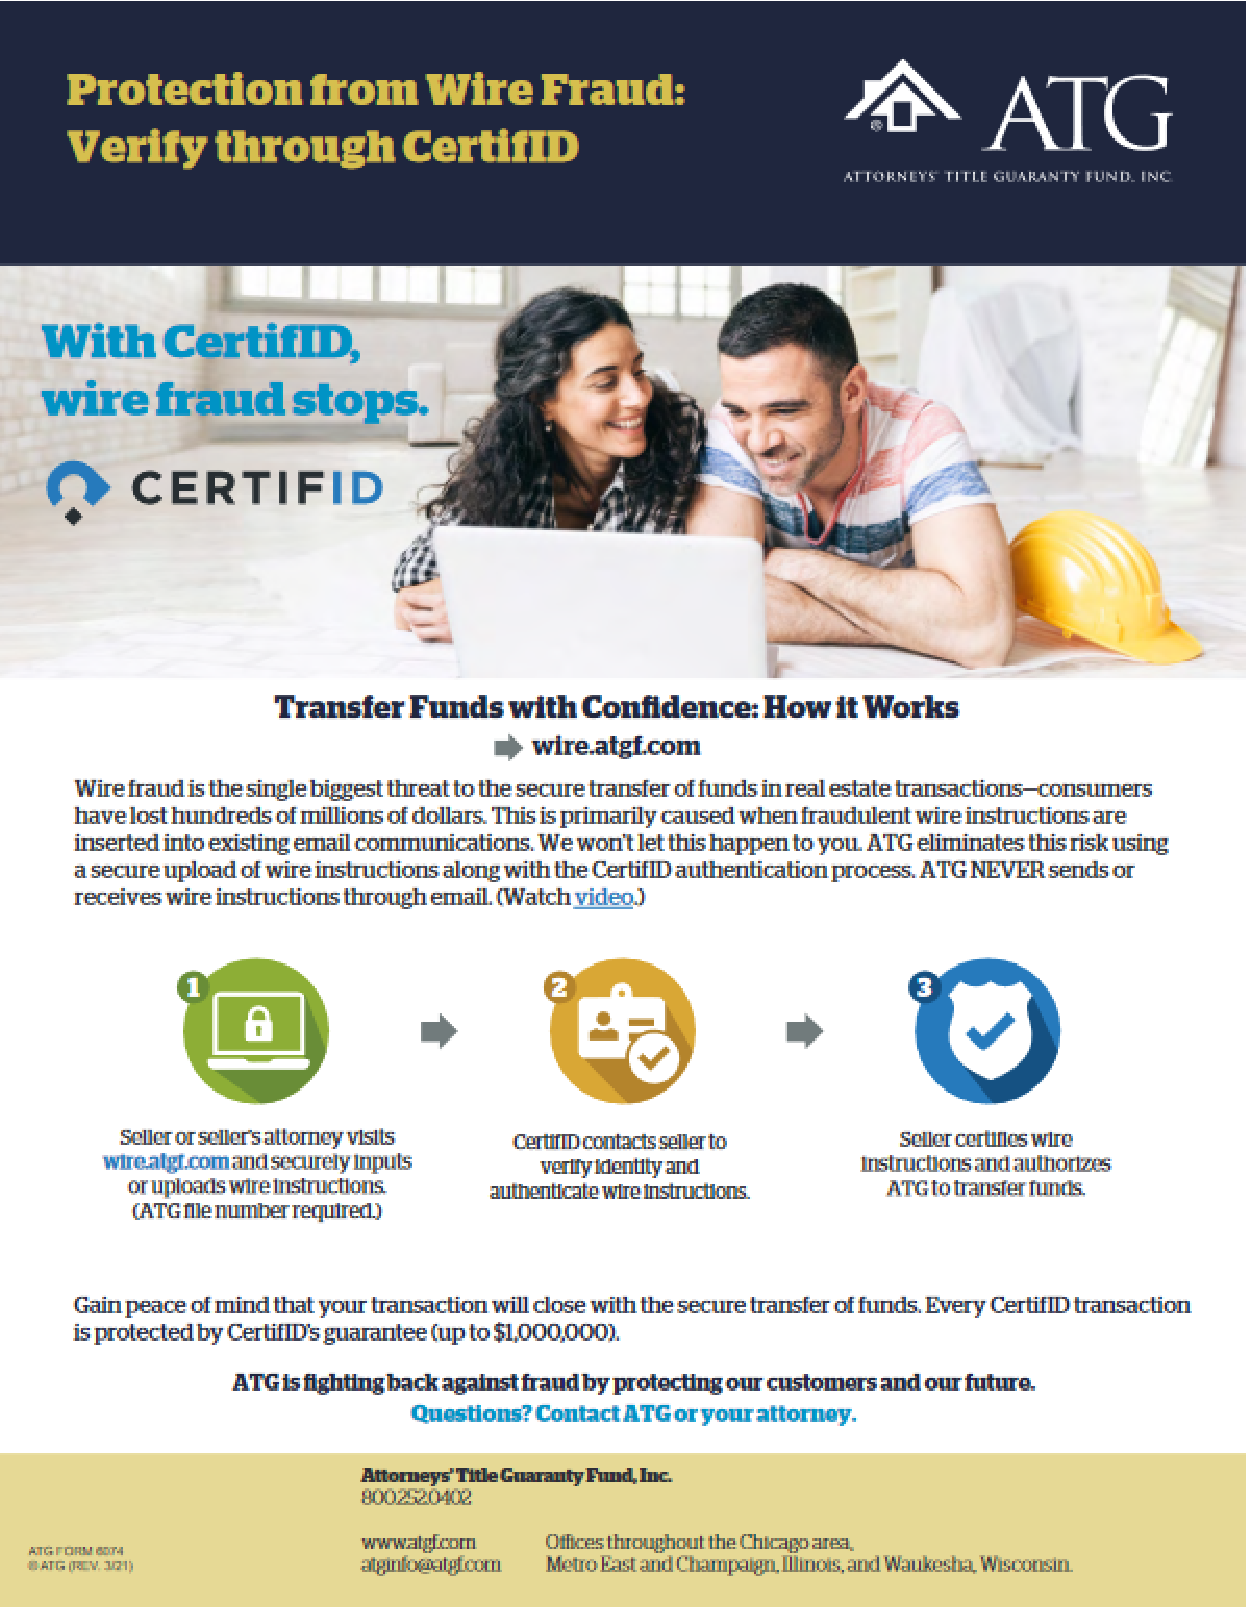 ATG CertifID flyer image/link